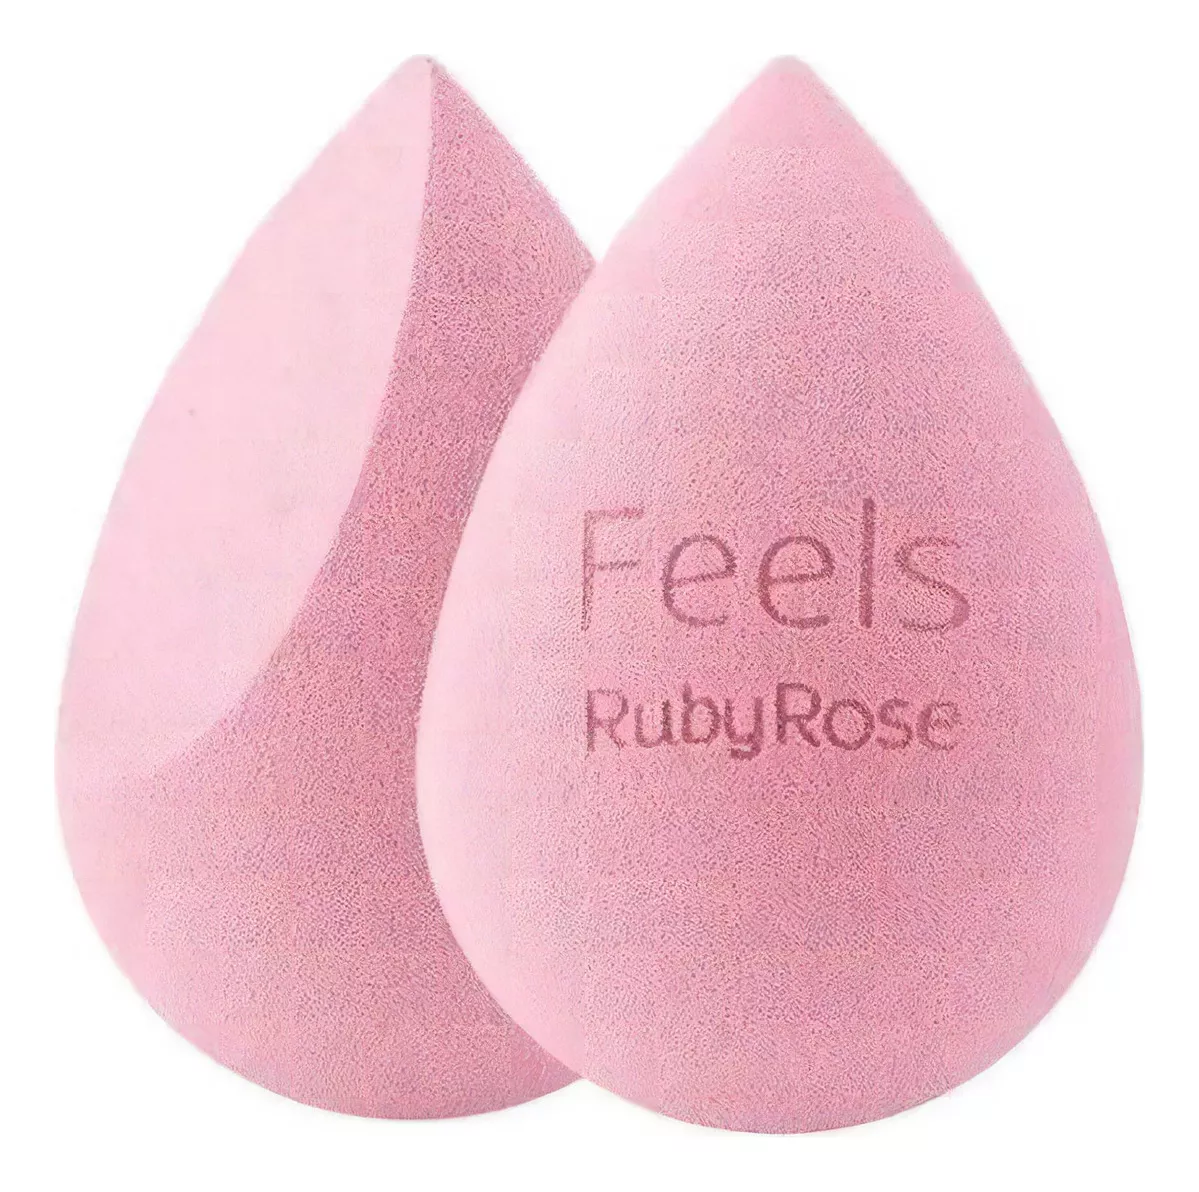 Segunda imagem para pesquisa de esponja ruby rose